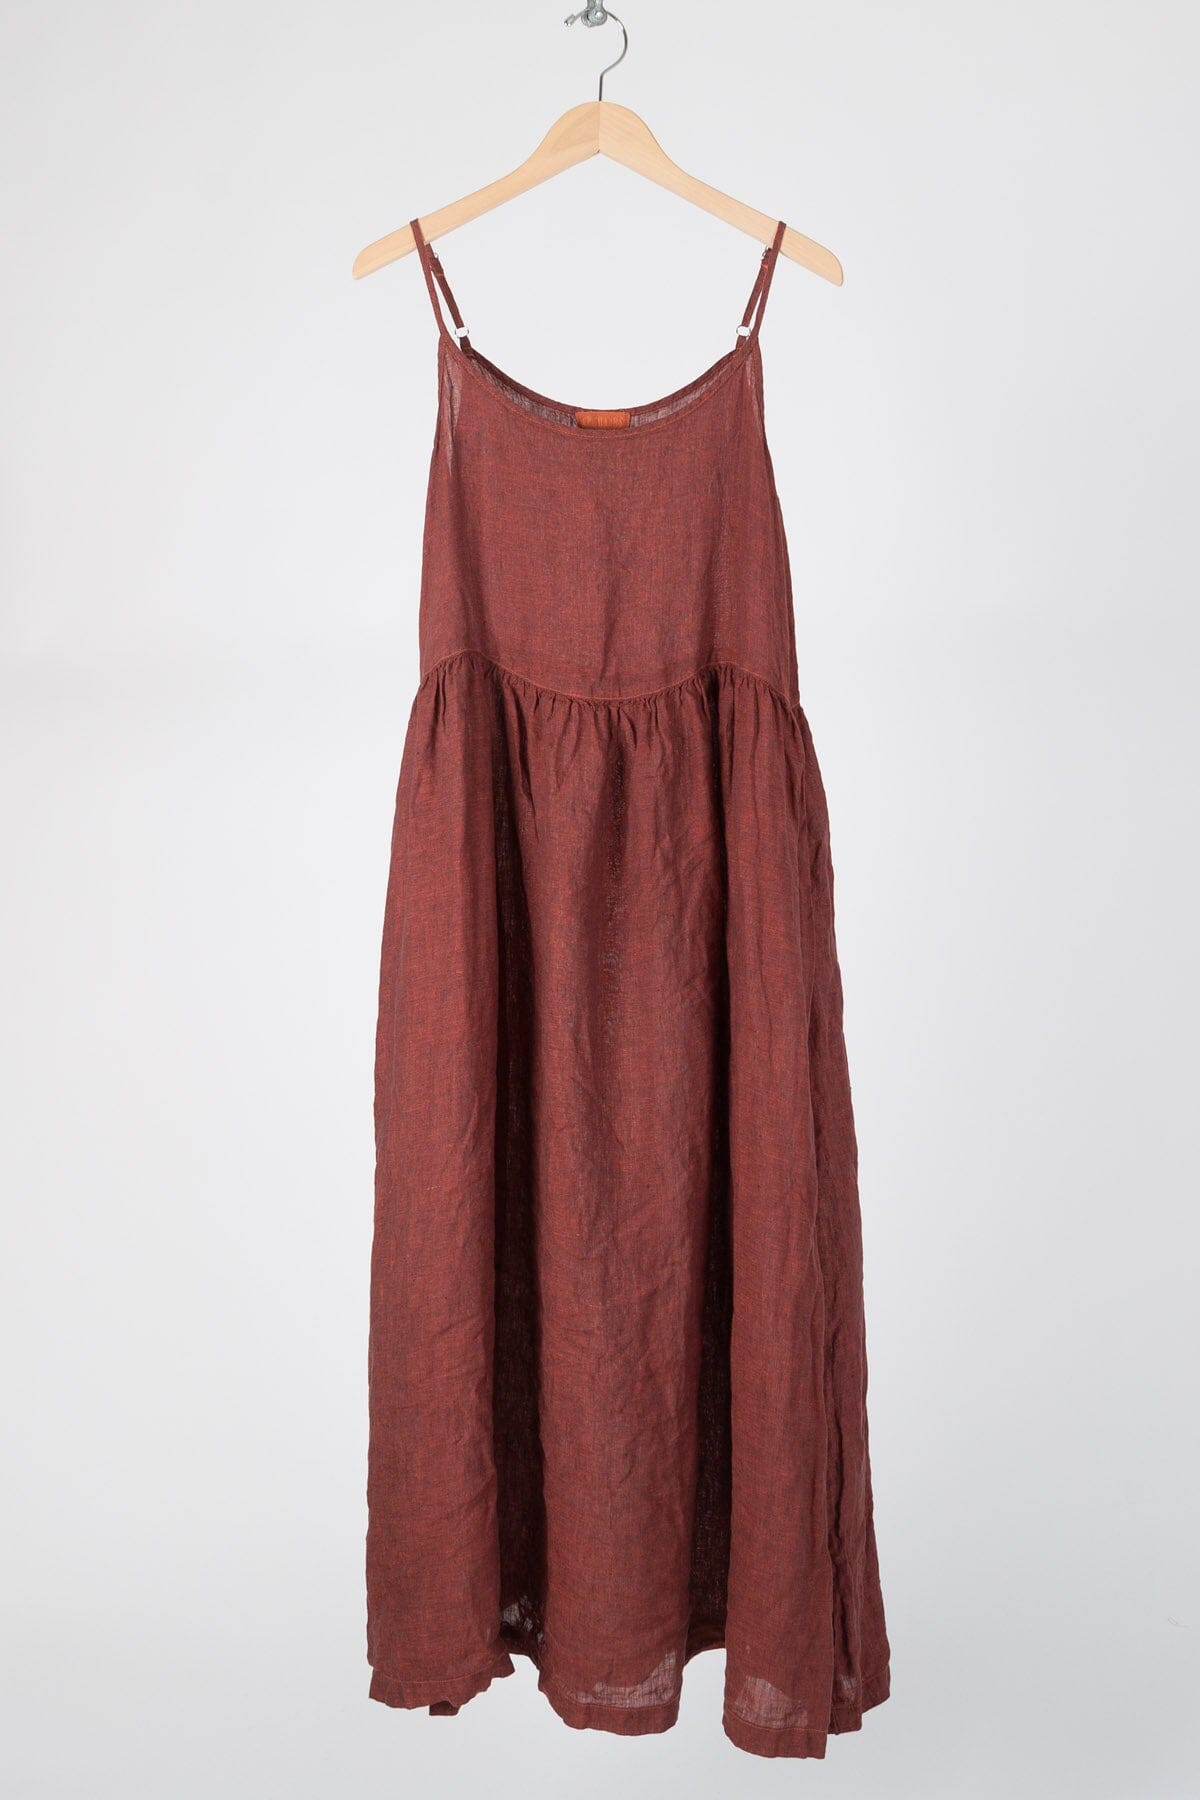 Hazel - Iridescent Linen S16 - Iridescent Skirts/Dresses CP Shades rust 162